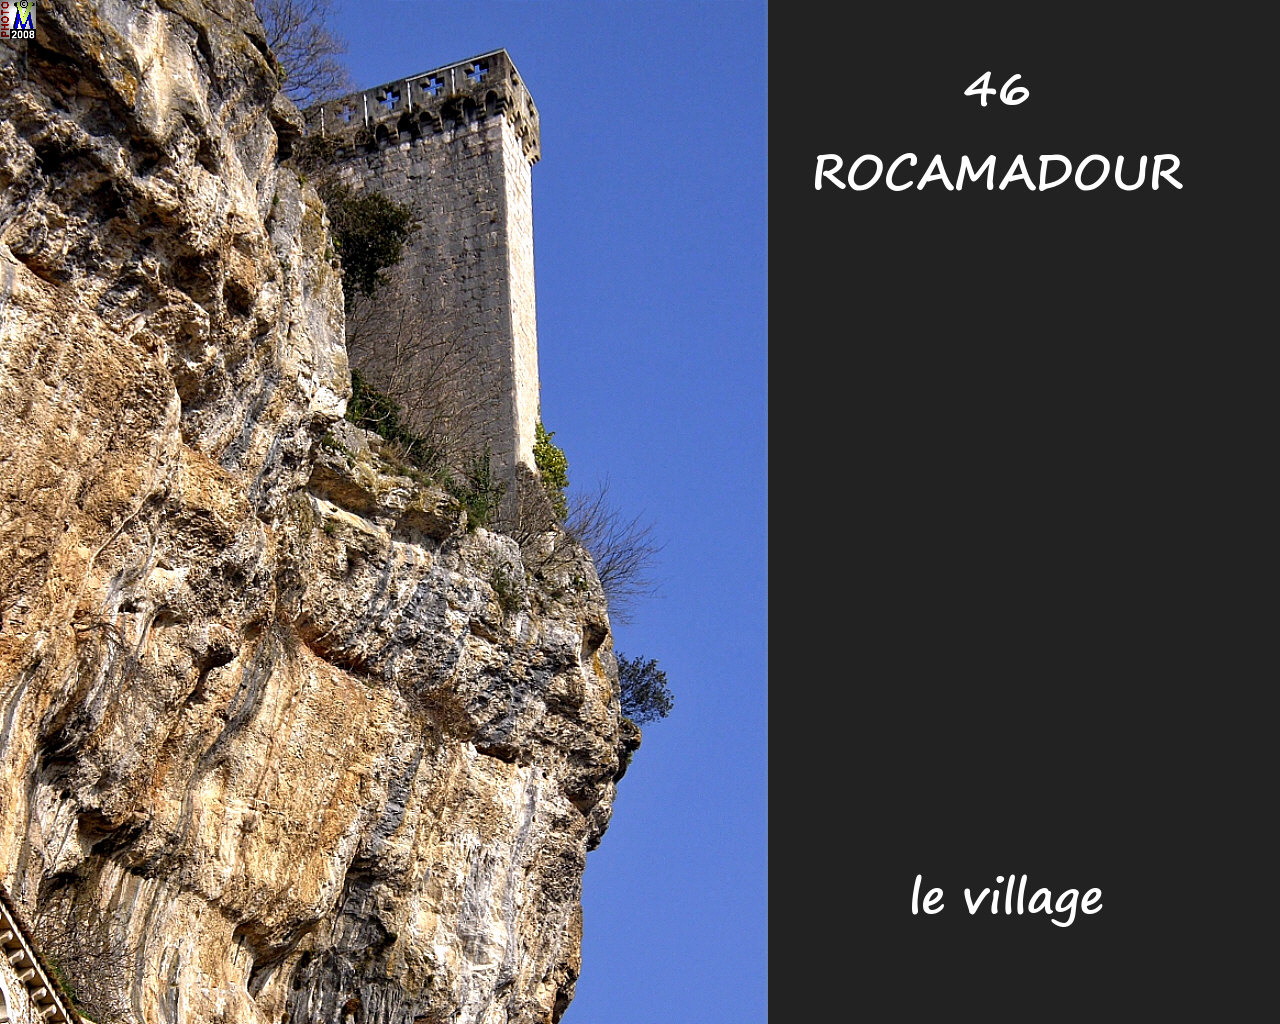 46ROCAMADOUR_village_172.jpg